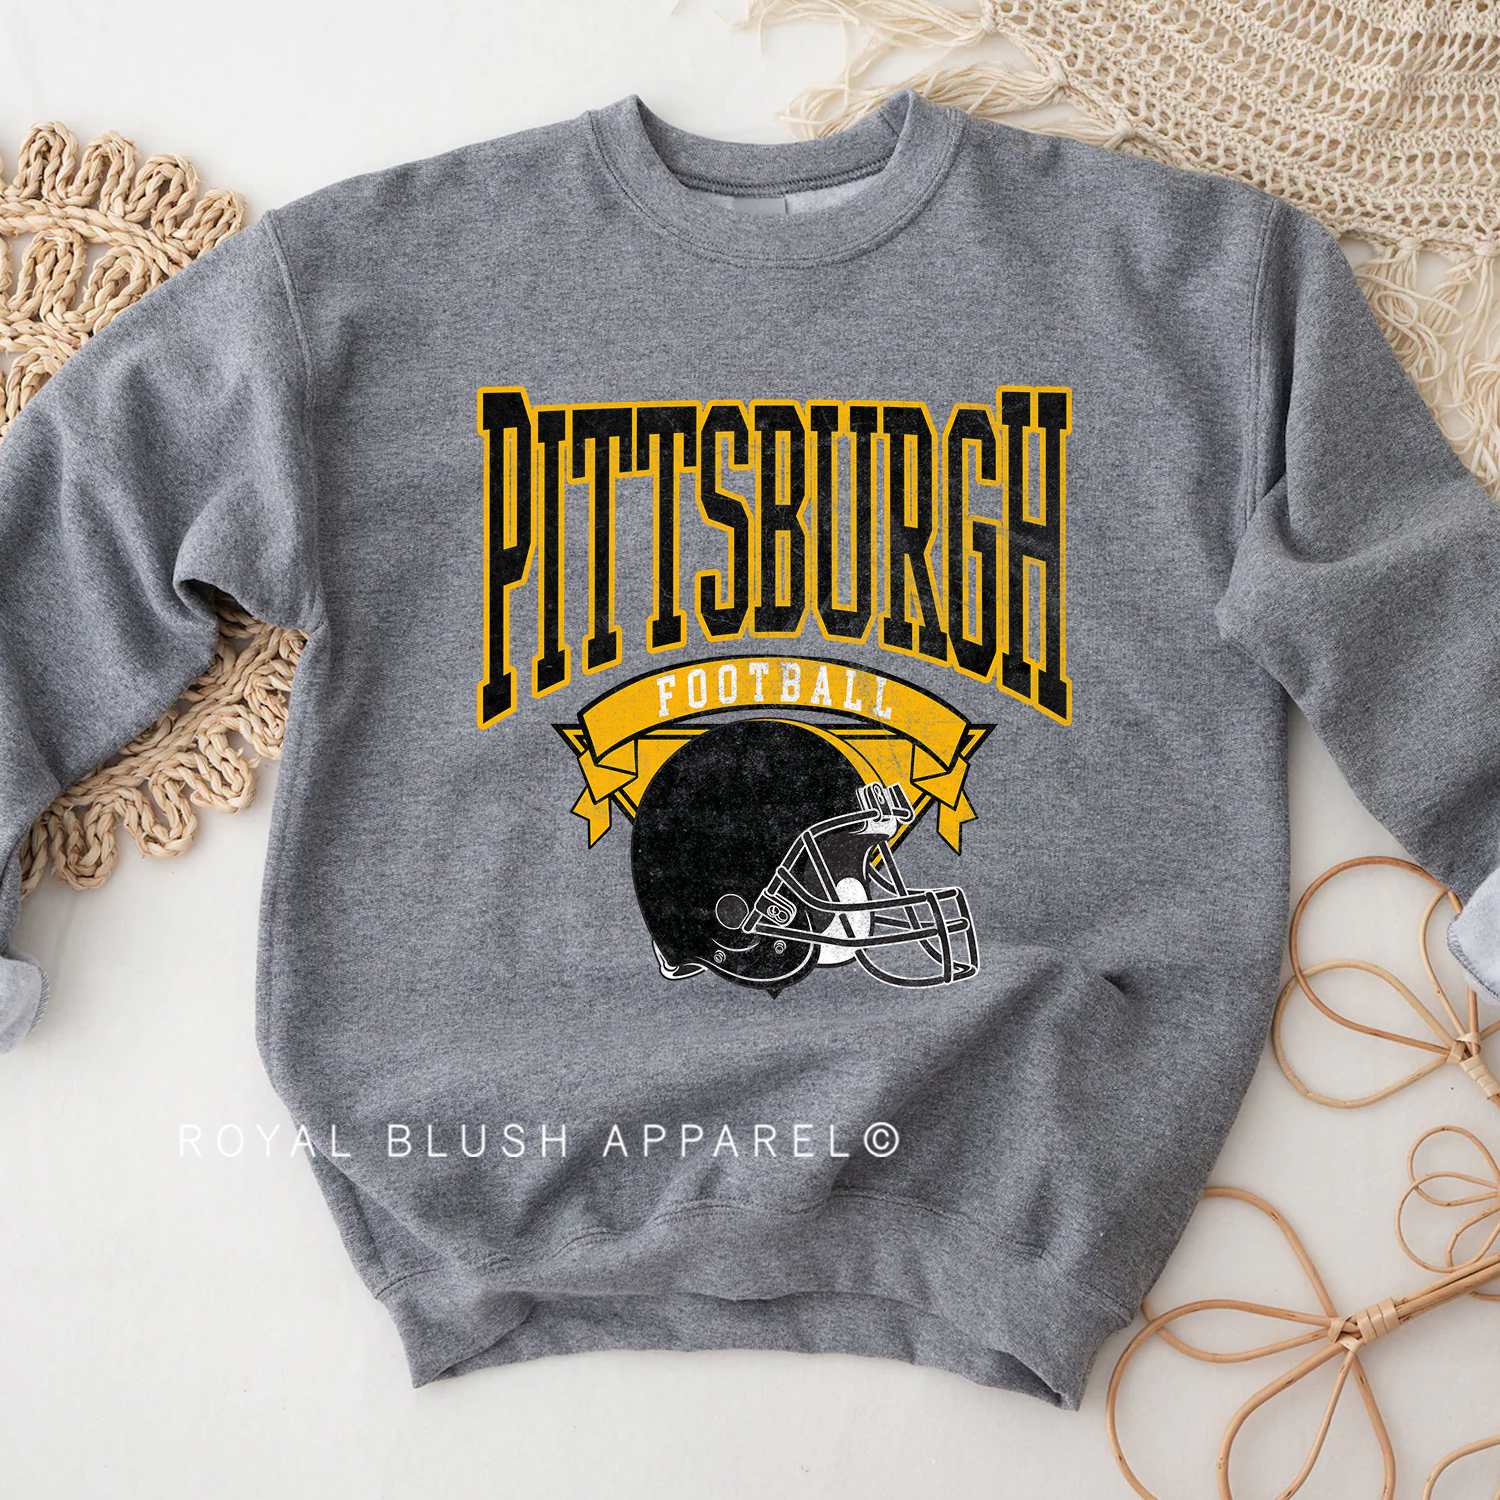 Pittsburg Football Sweatshirt